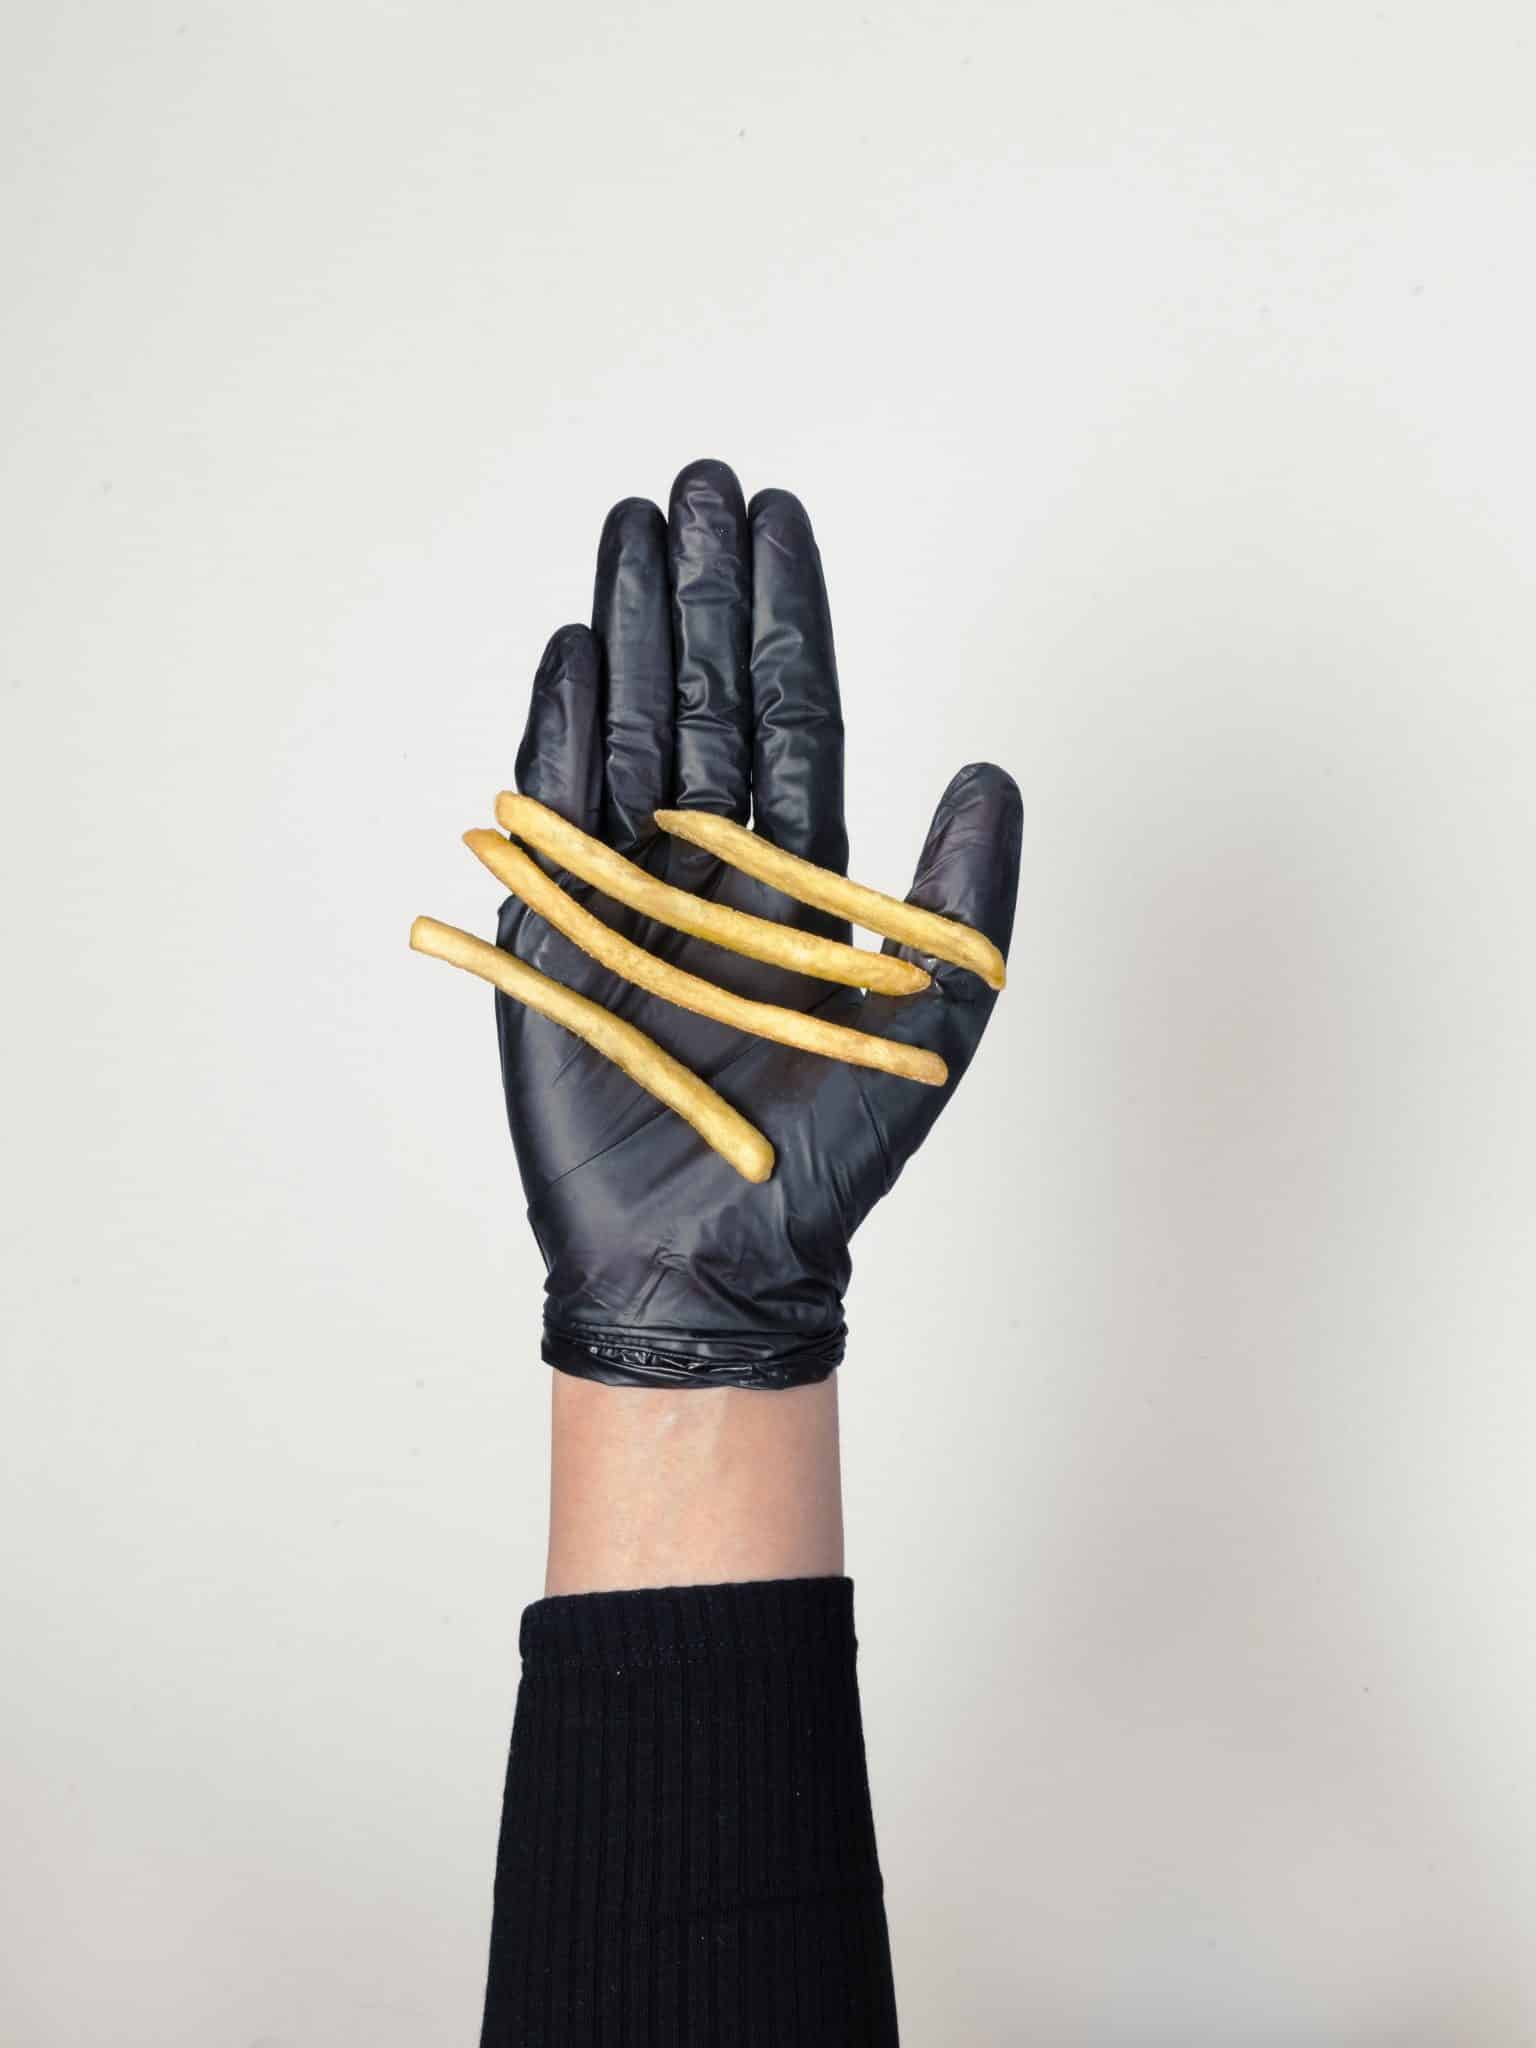 Lebensmittel industrie hygieneschutz einweghandschuh pommes handschutz schwarz cool günstig